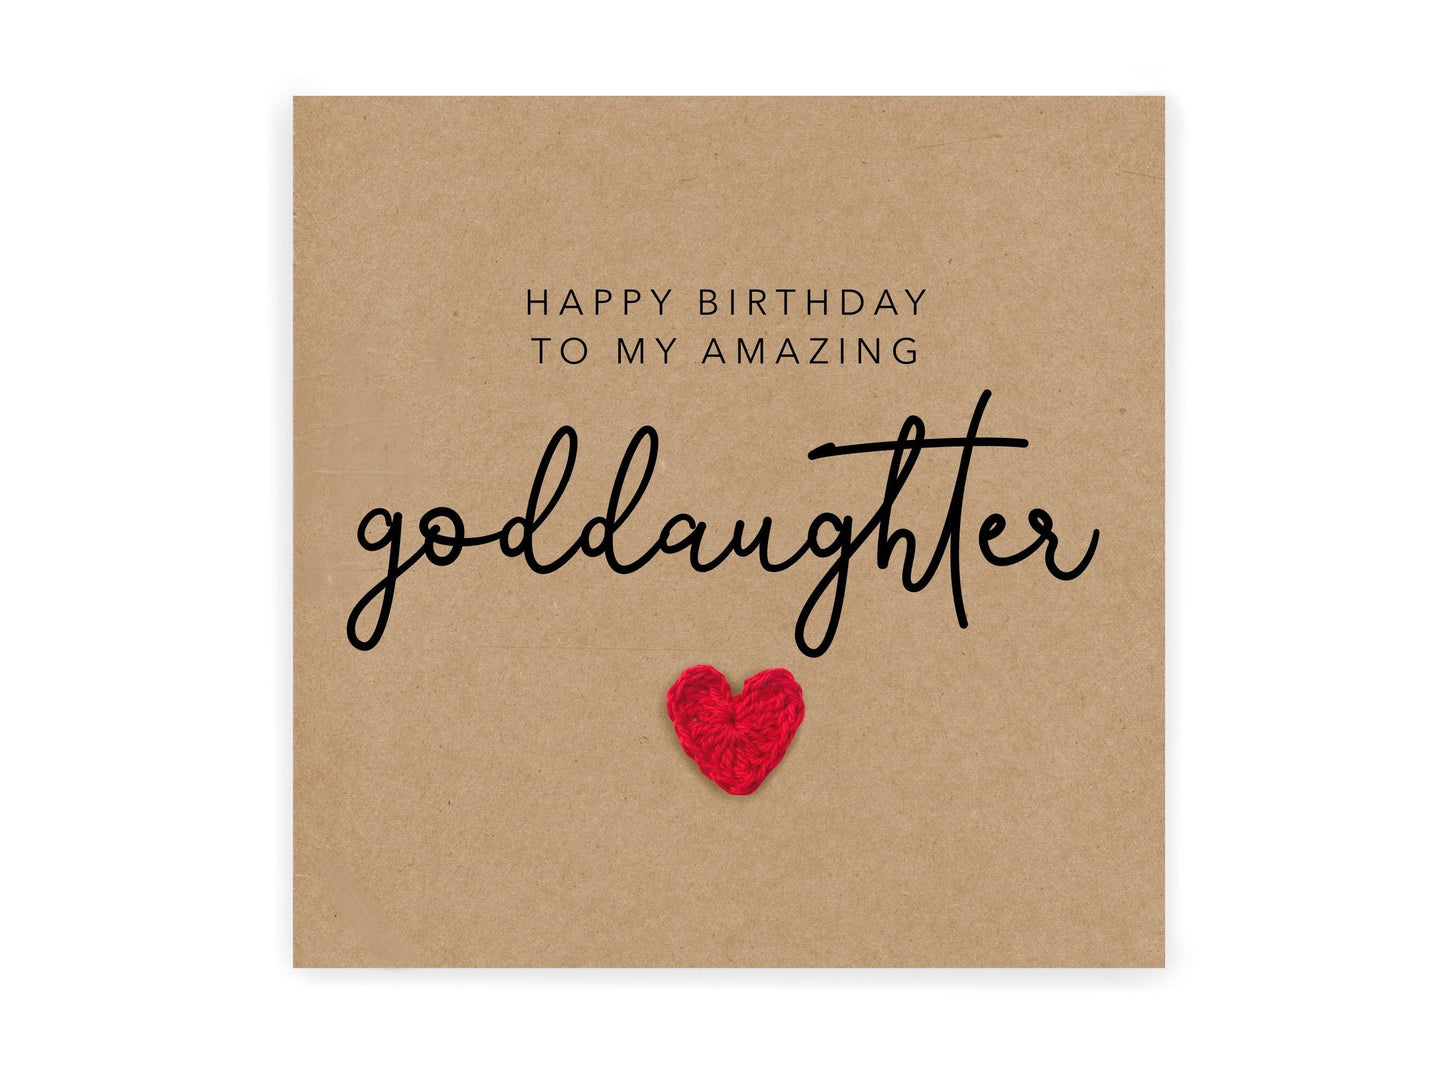 Happy Birthday To My Amazing Goddaughter, Goddaughter Birthday, Happy Birthday Goddaughter, Birthday Card, Birthday Card Goddaughter